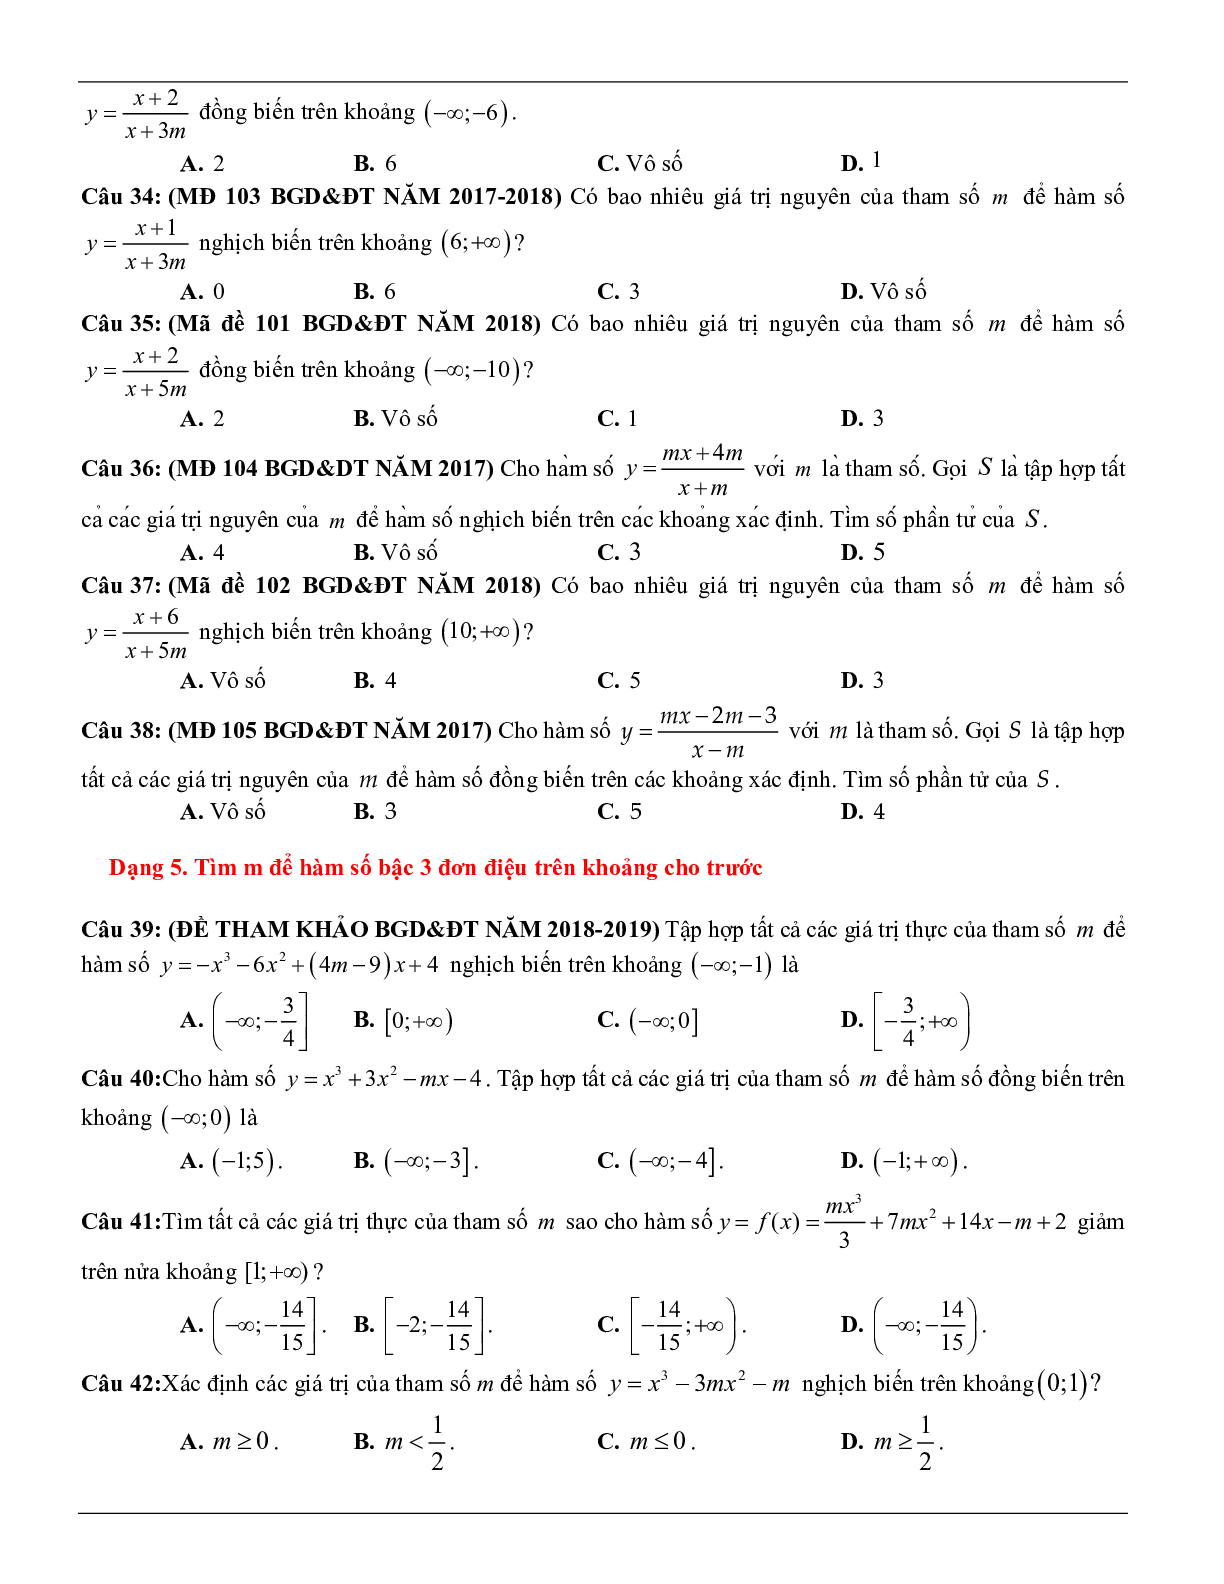 Các dạng toán về tính đơn điệu của hàm số thường gặp trong kỳ thi THPT Quốc gia (trang 6)